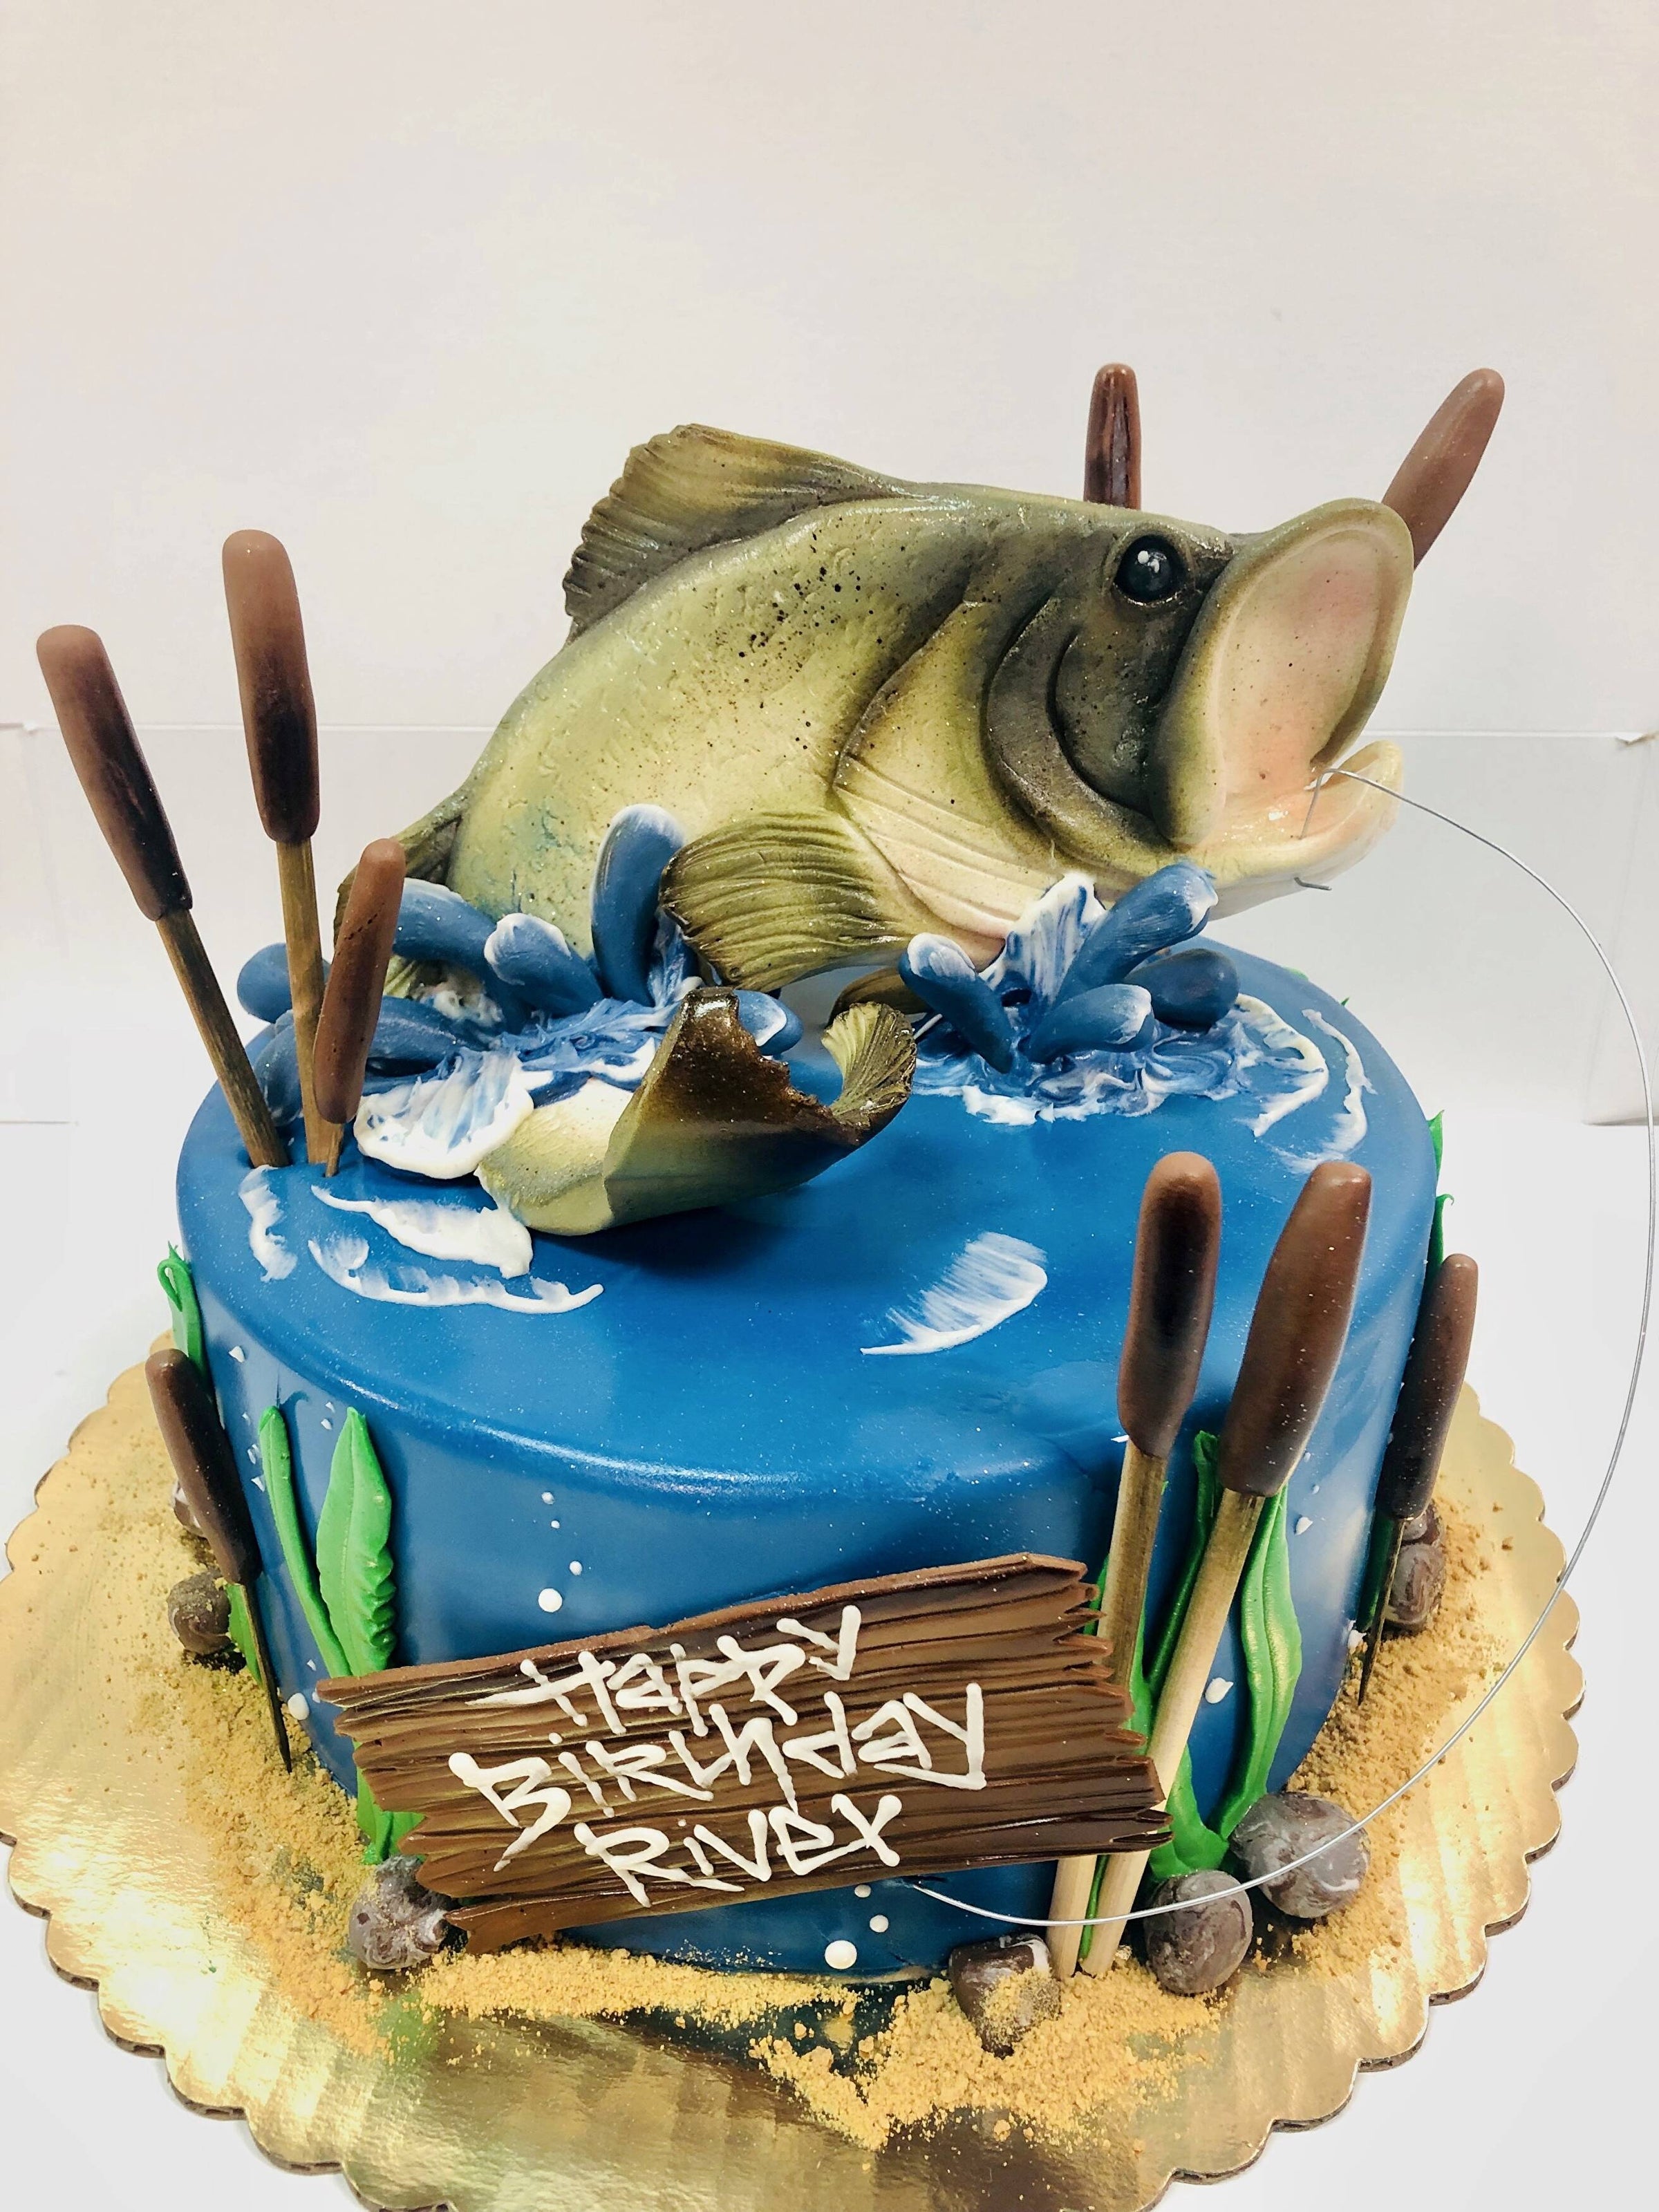 Ice-Fishing Cake — Fishing / Hunting  Hunting cake, Fish cake, Fish cake  birthday